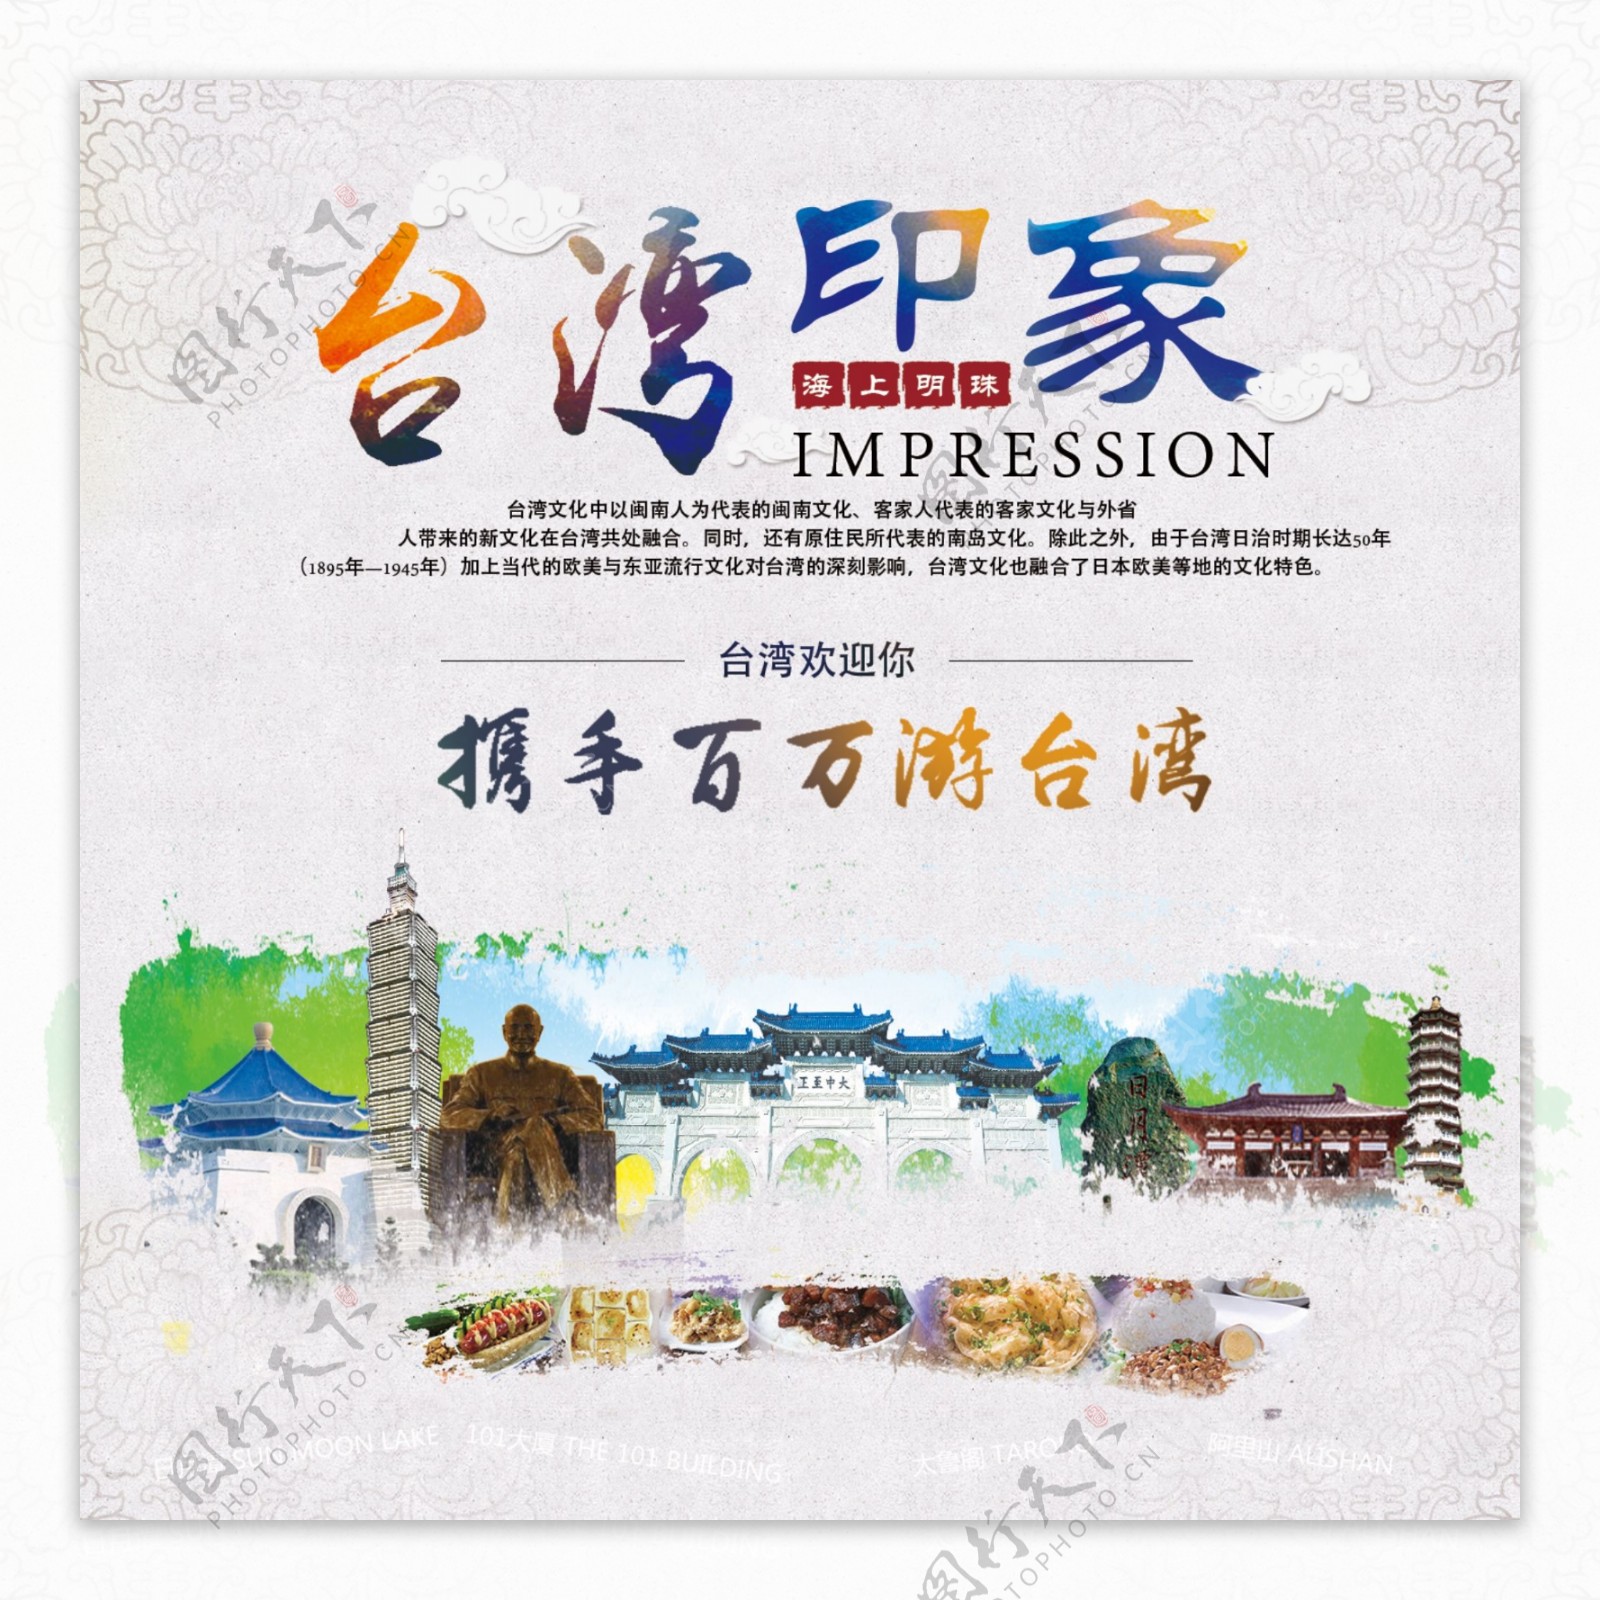 中国风台湾印象宣传海报psd分层素材